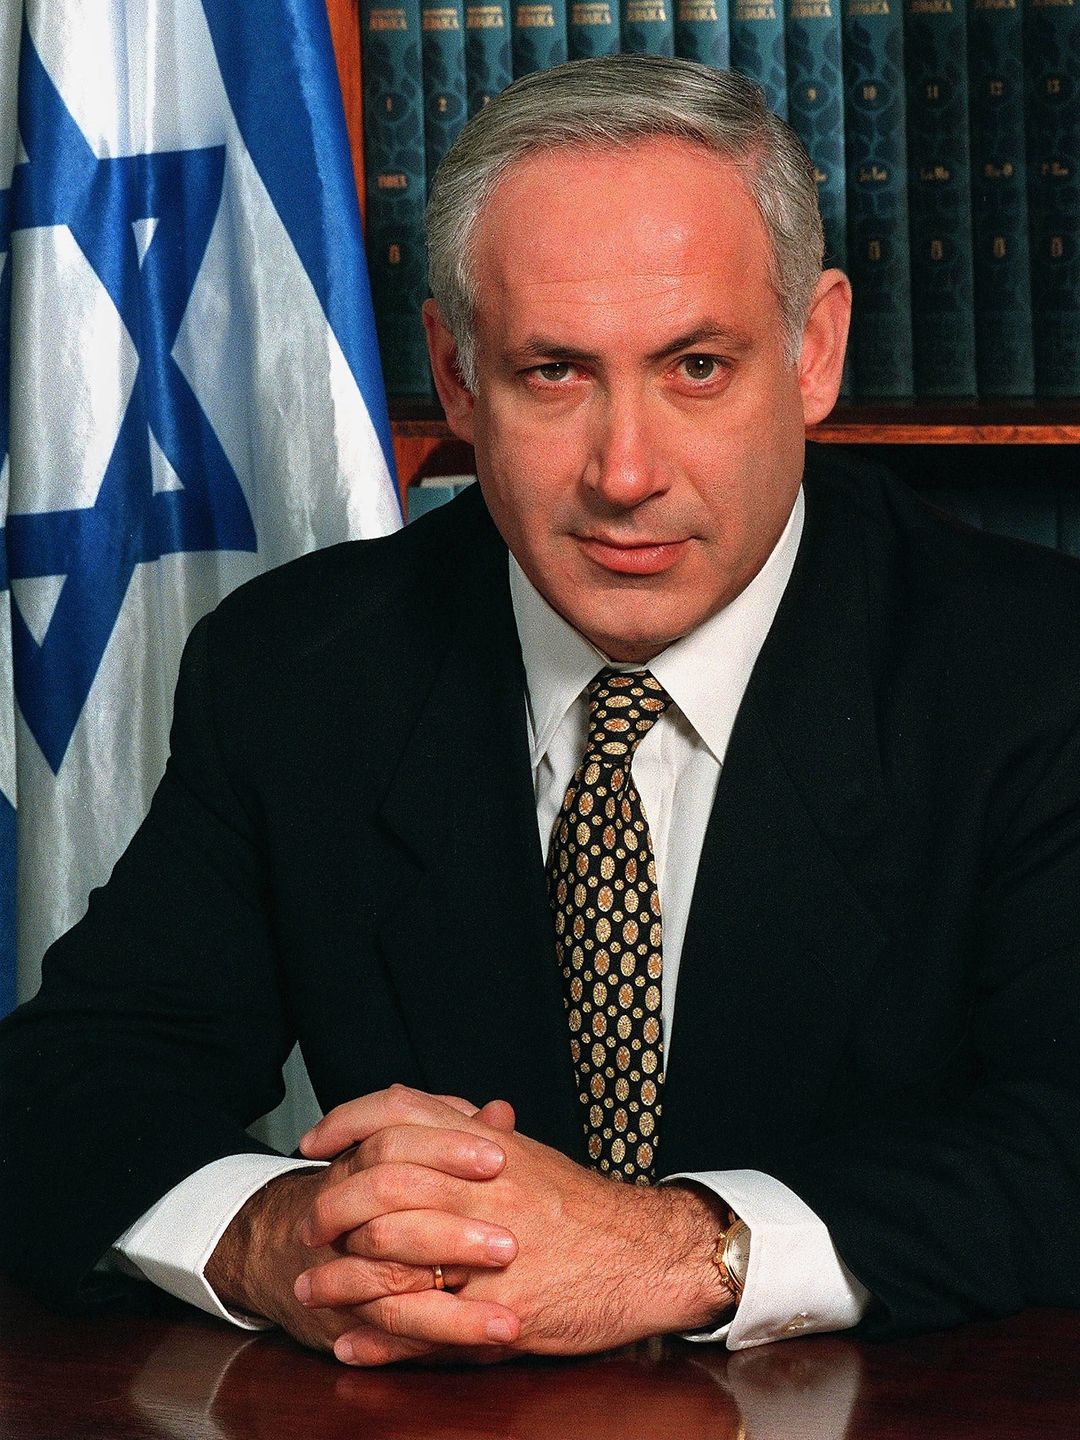 Benjamin Netanyahu main achievements